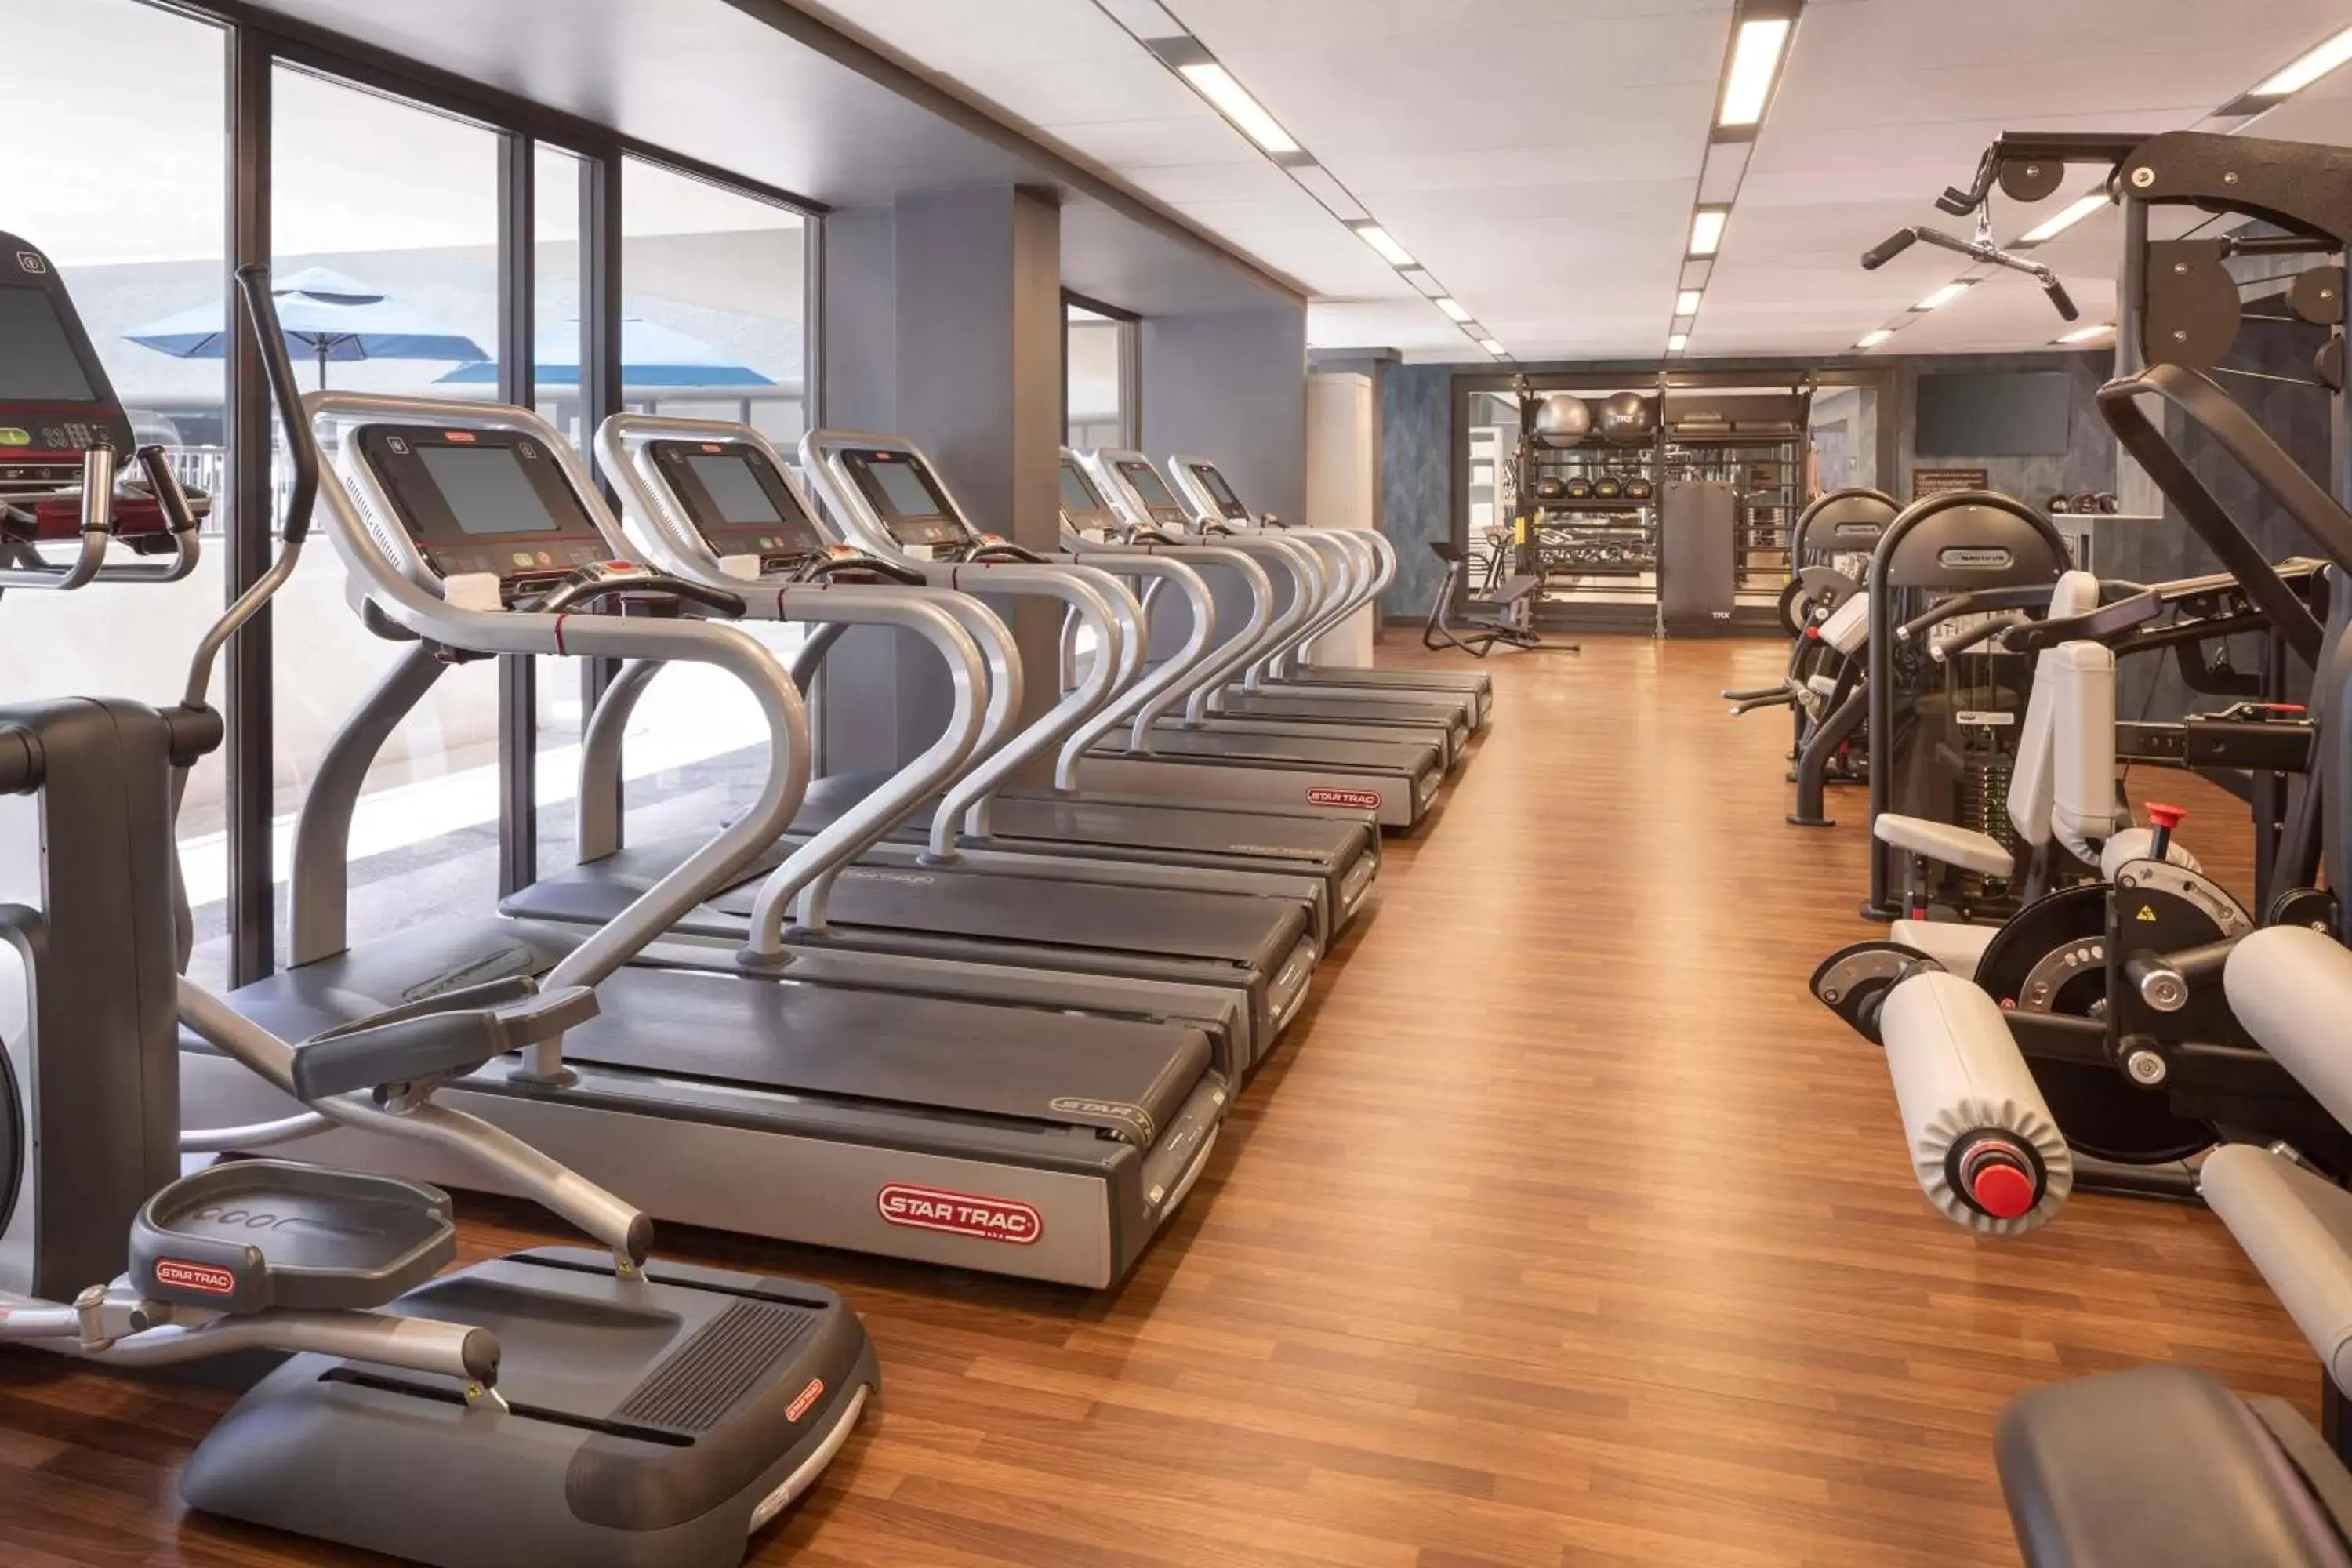 Fitness centre/facilities, Fitness Center/Facilities in Hyatt Regency Phoenix